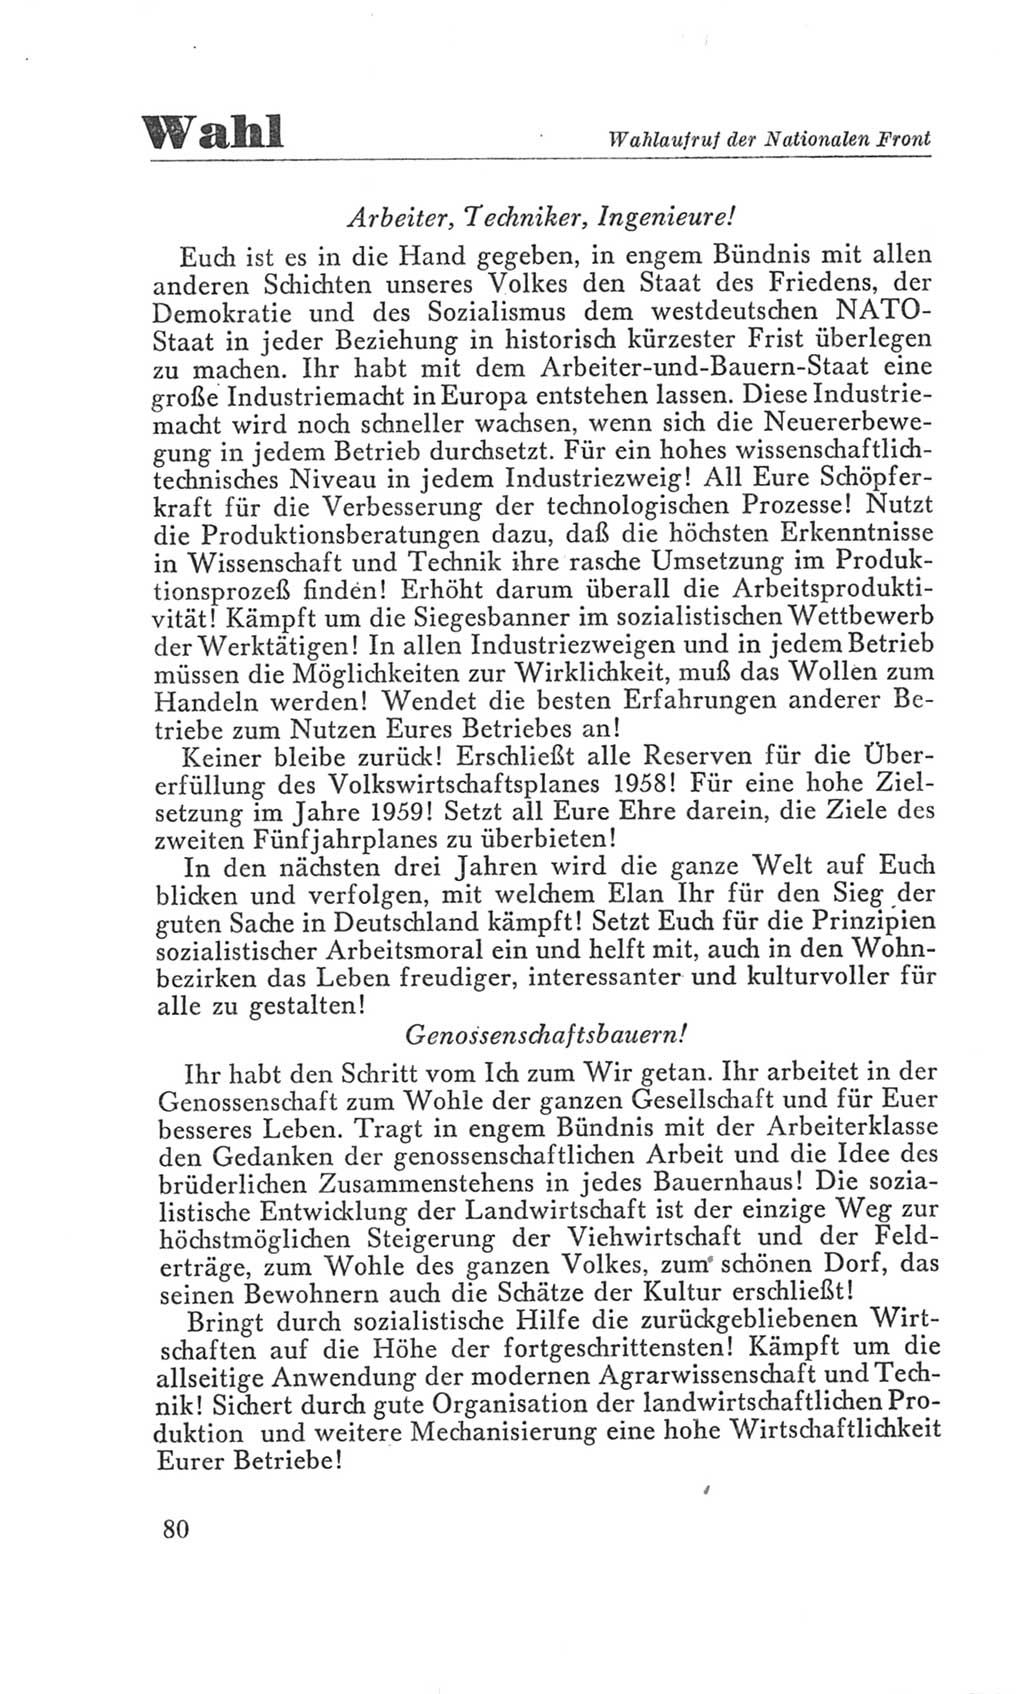 Handbuch der Volkskammer (VK) der Deutschen Demokratischen Republik (DDR), 3. Wahlperiode 1958-1963, Seite 80 (Hdb. VK. DDR 3. WP. 1958-1963, S. 80)